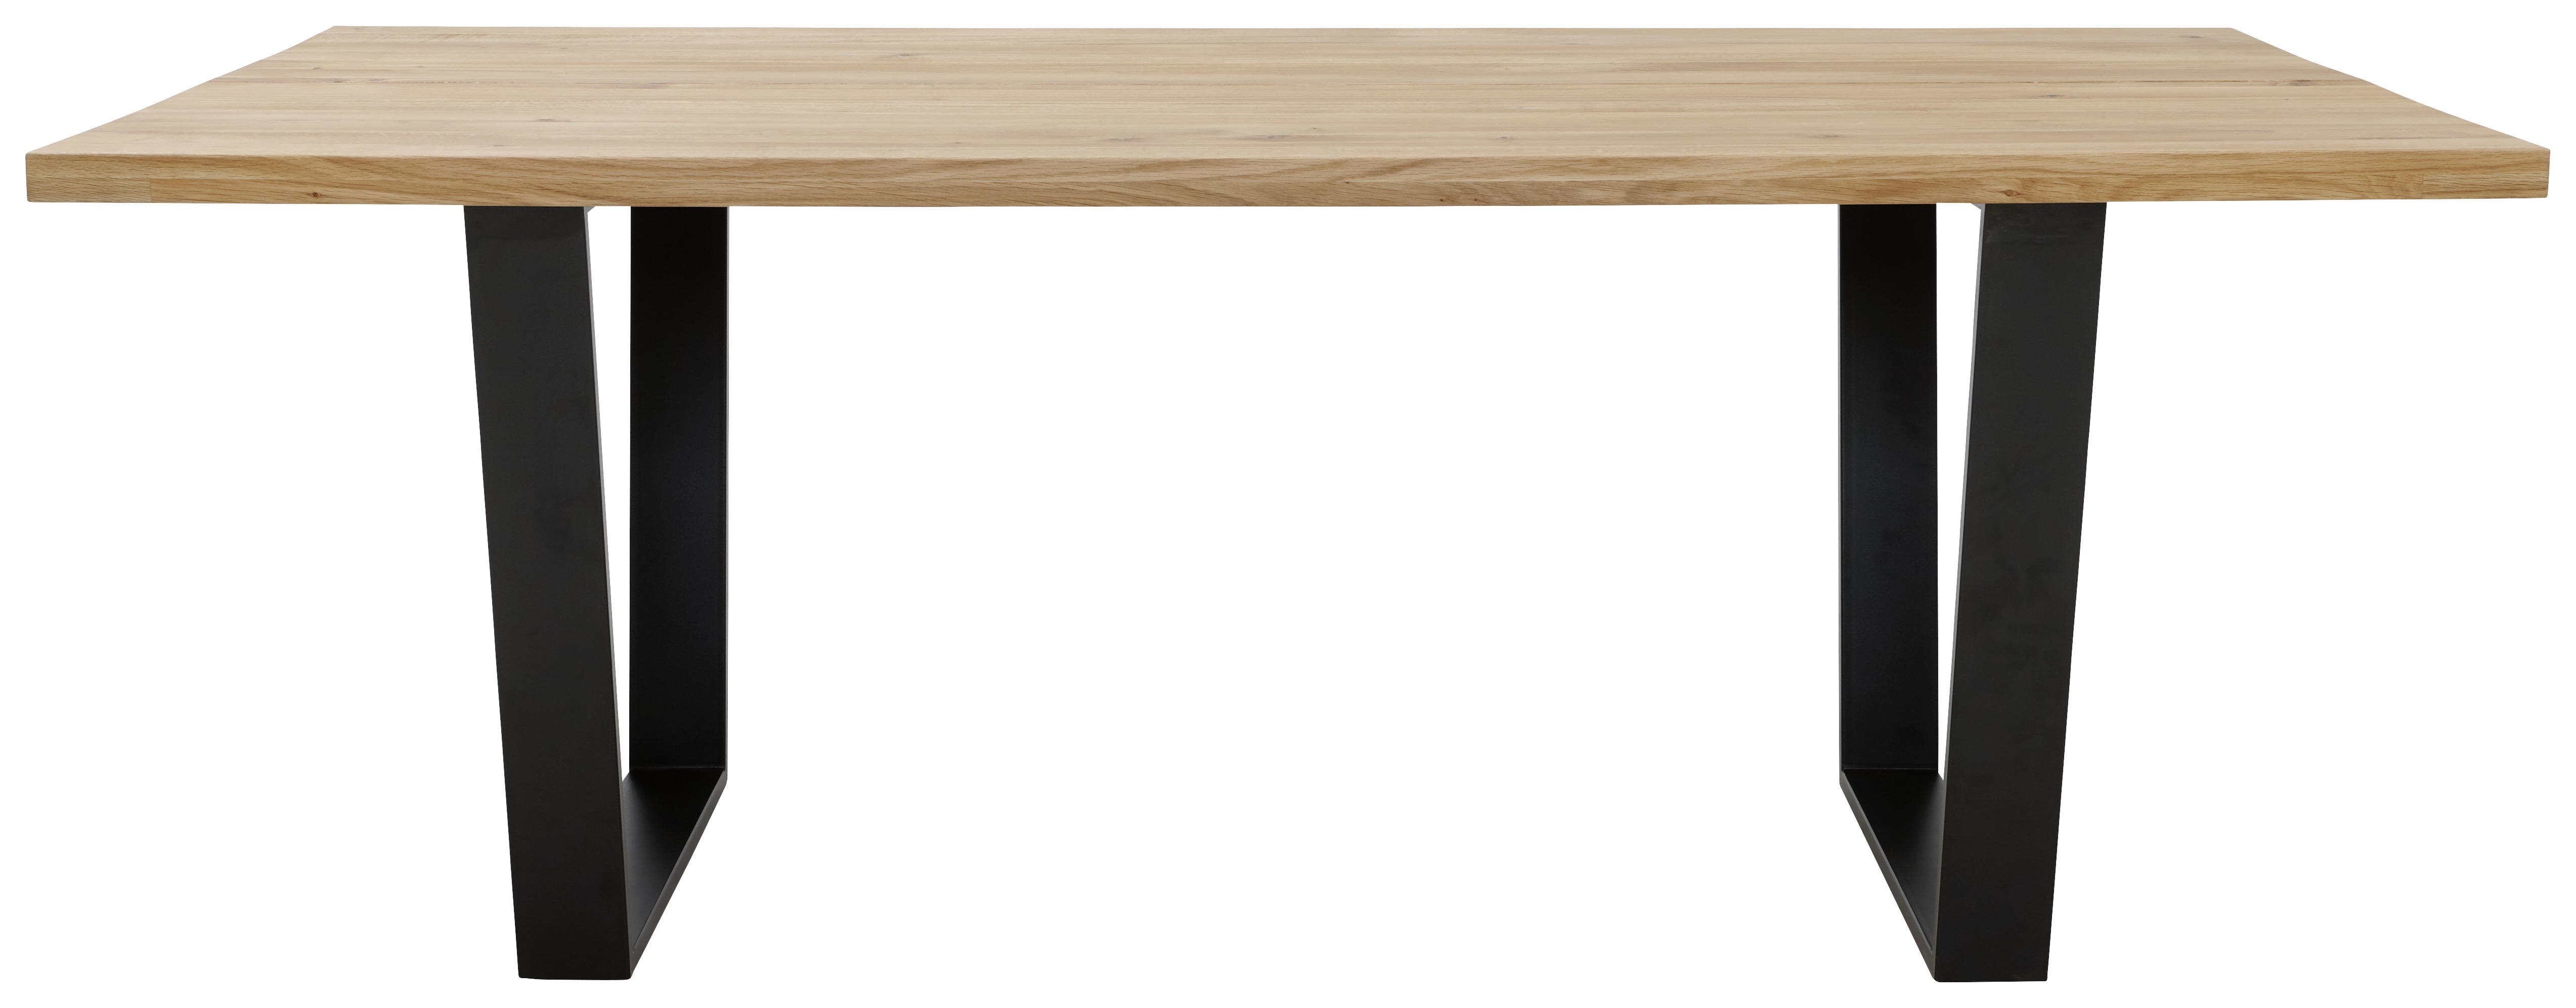 ESSTISCH 200/100/78 cm Wildeiche massiv Holz, Metall Schwarz, Eichefarben  - Eichefarben/Schwarz, KONVENTIONELL, Holz/Metall (200/100/78cm) - Voleo